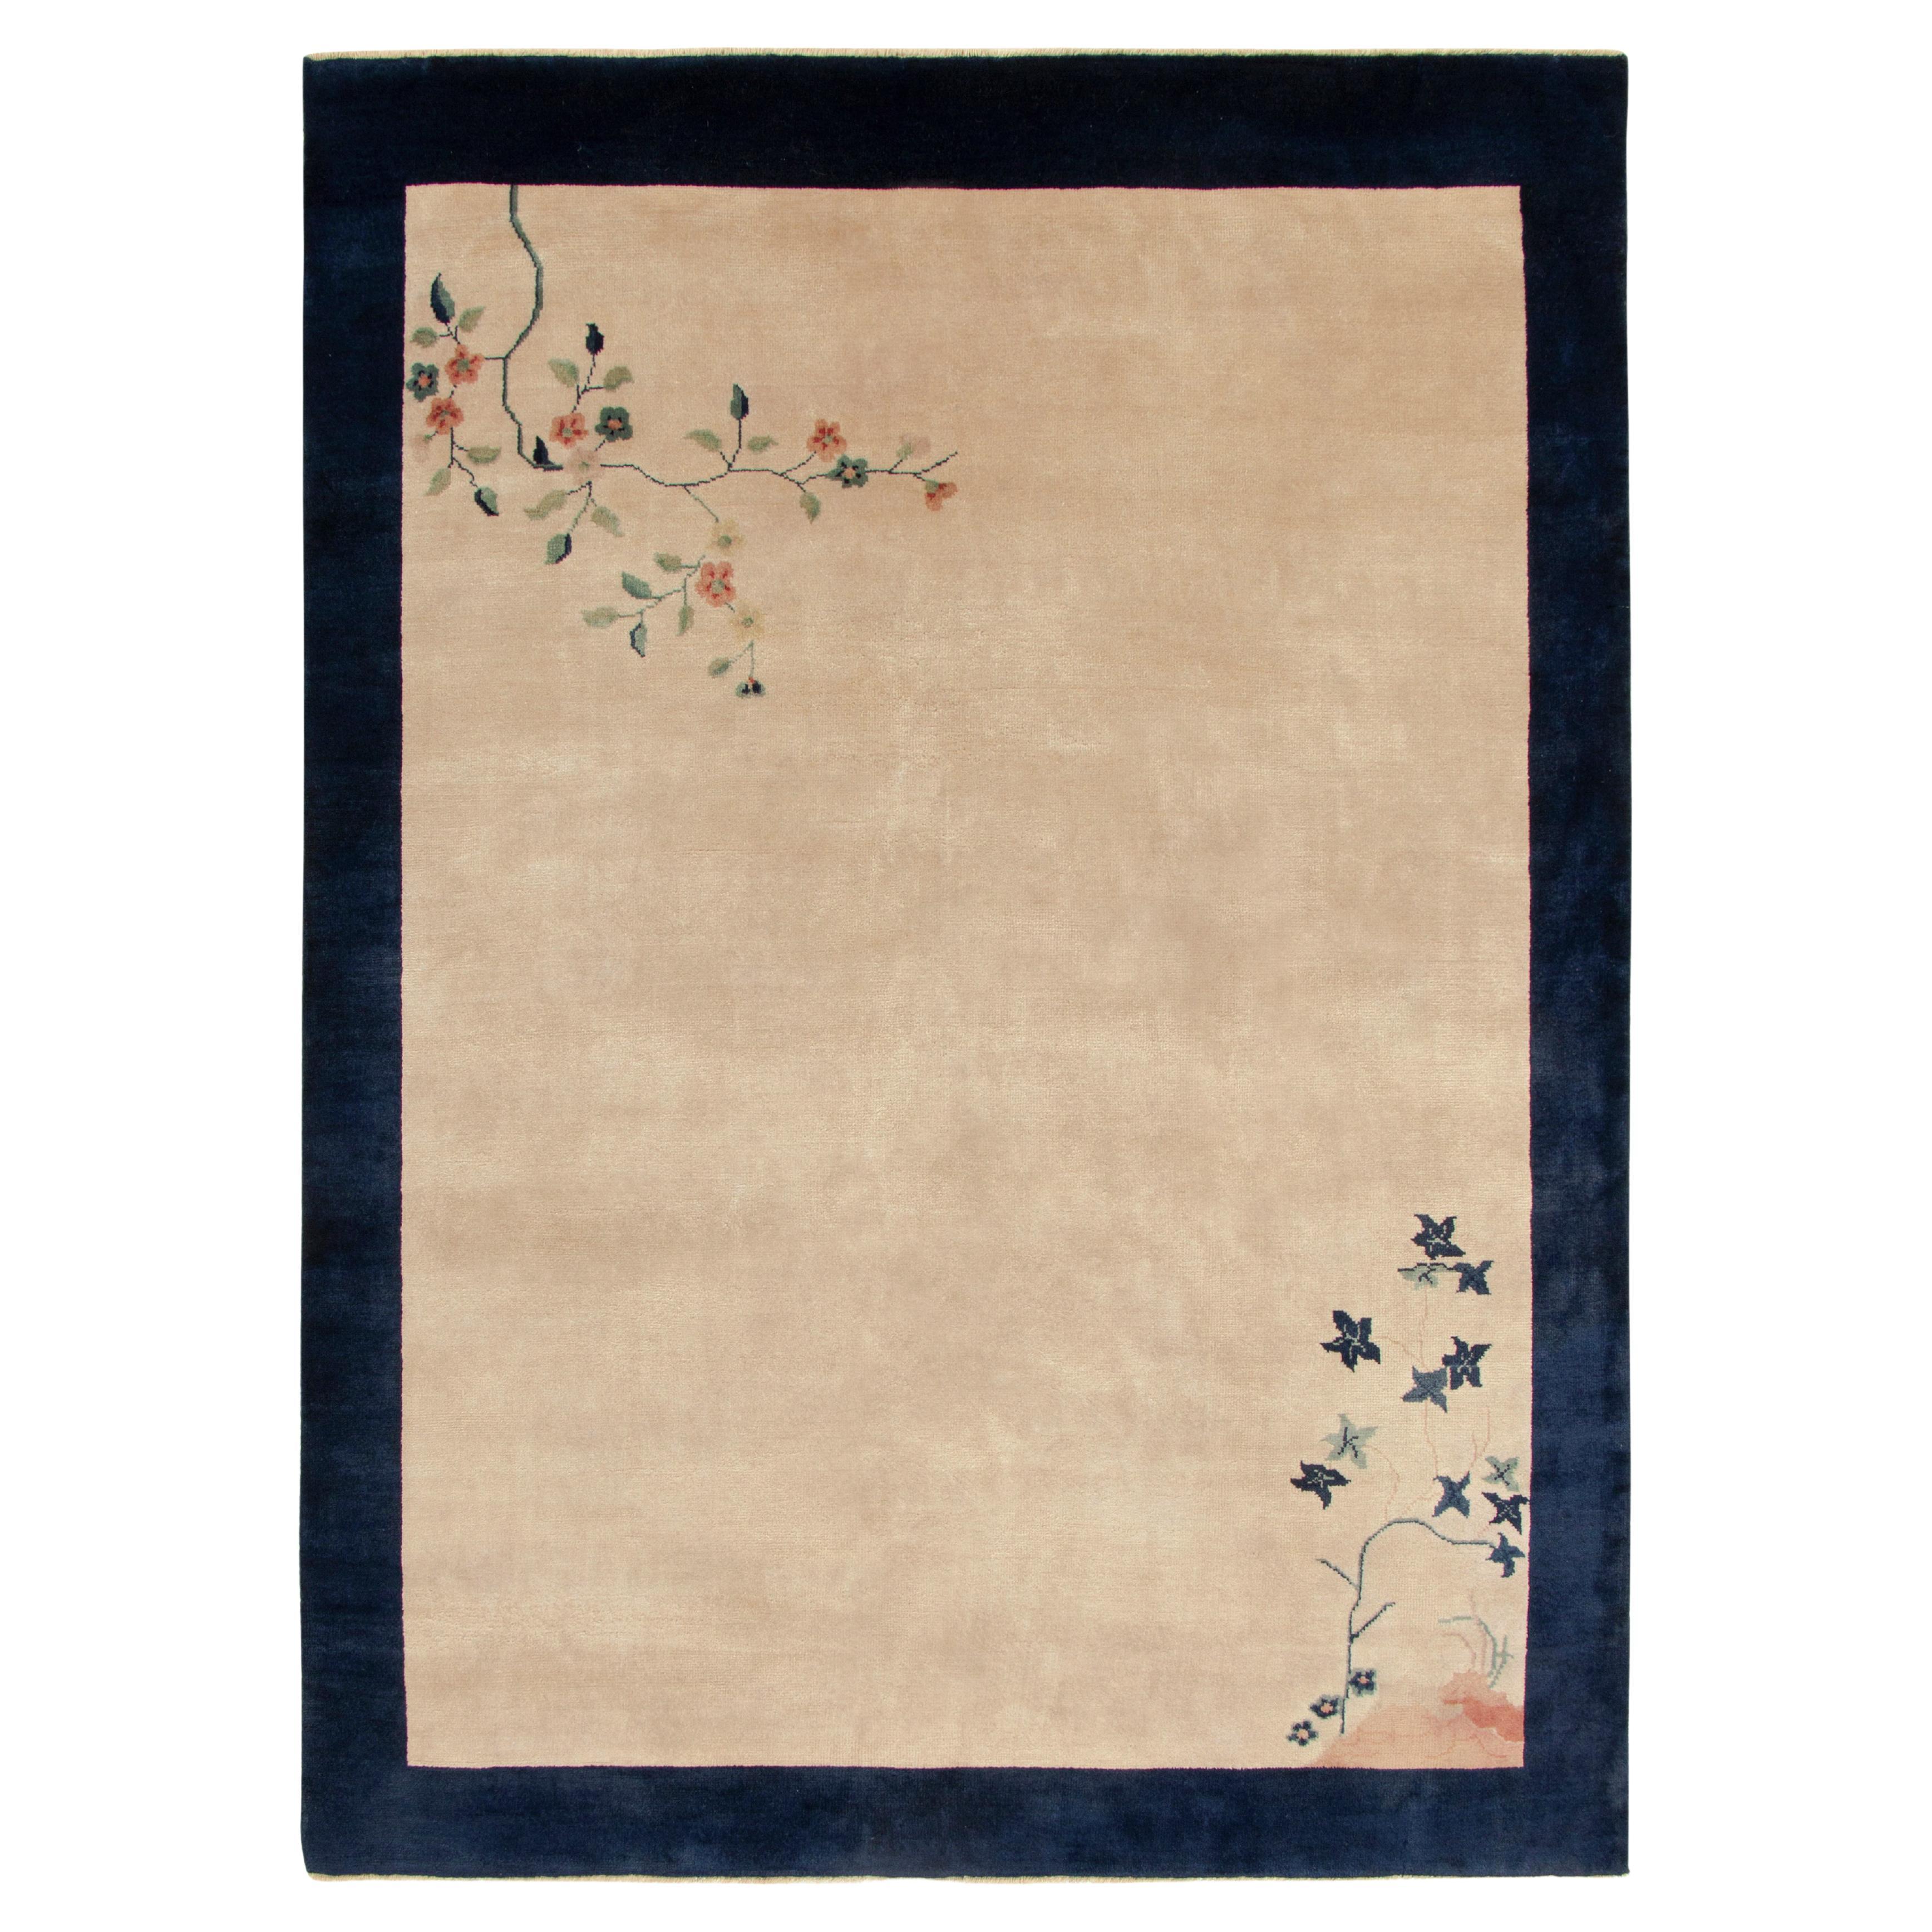 Chinesischer Deko-Teppich im Vintage-Stil in Blau, Beige, Teal, Rot mit Blumenmuster von Teppich & Kelim